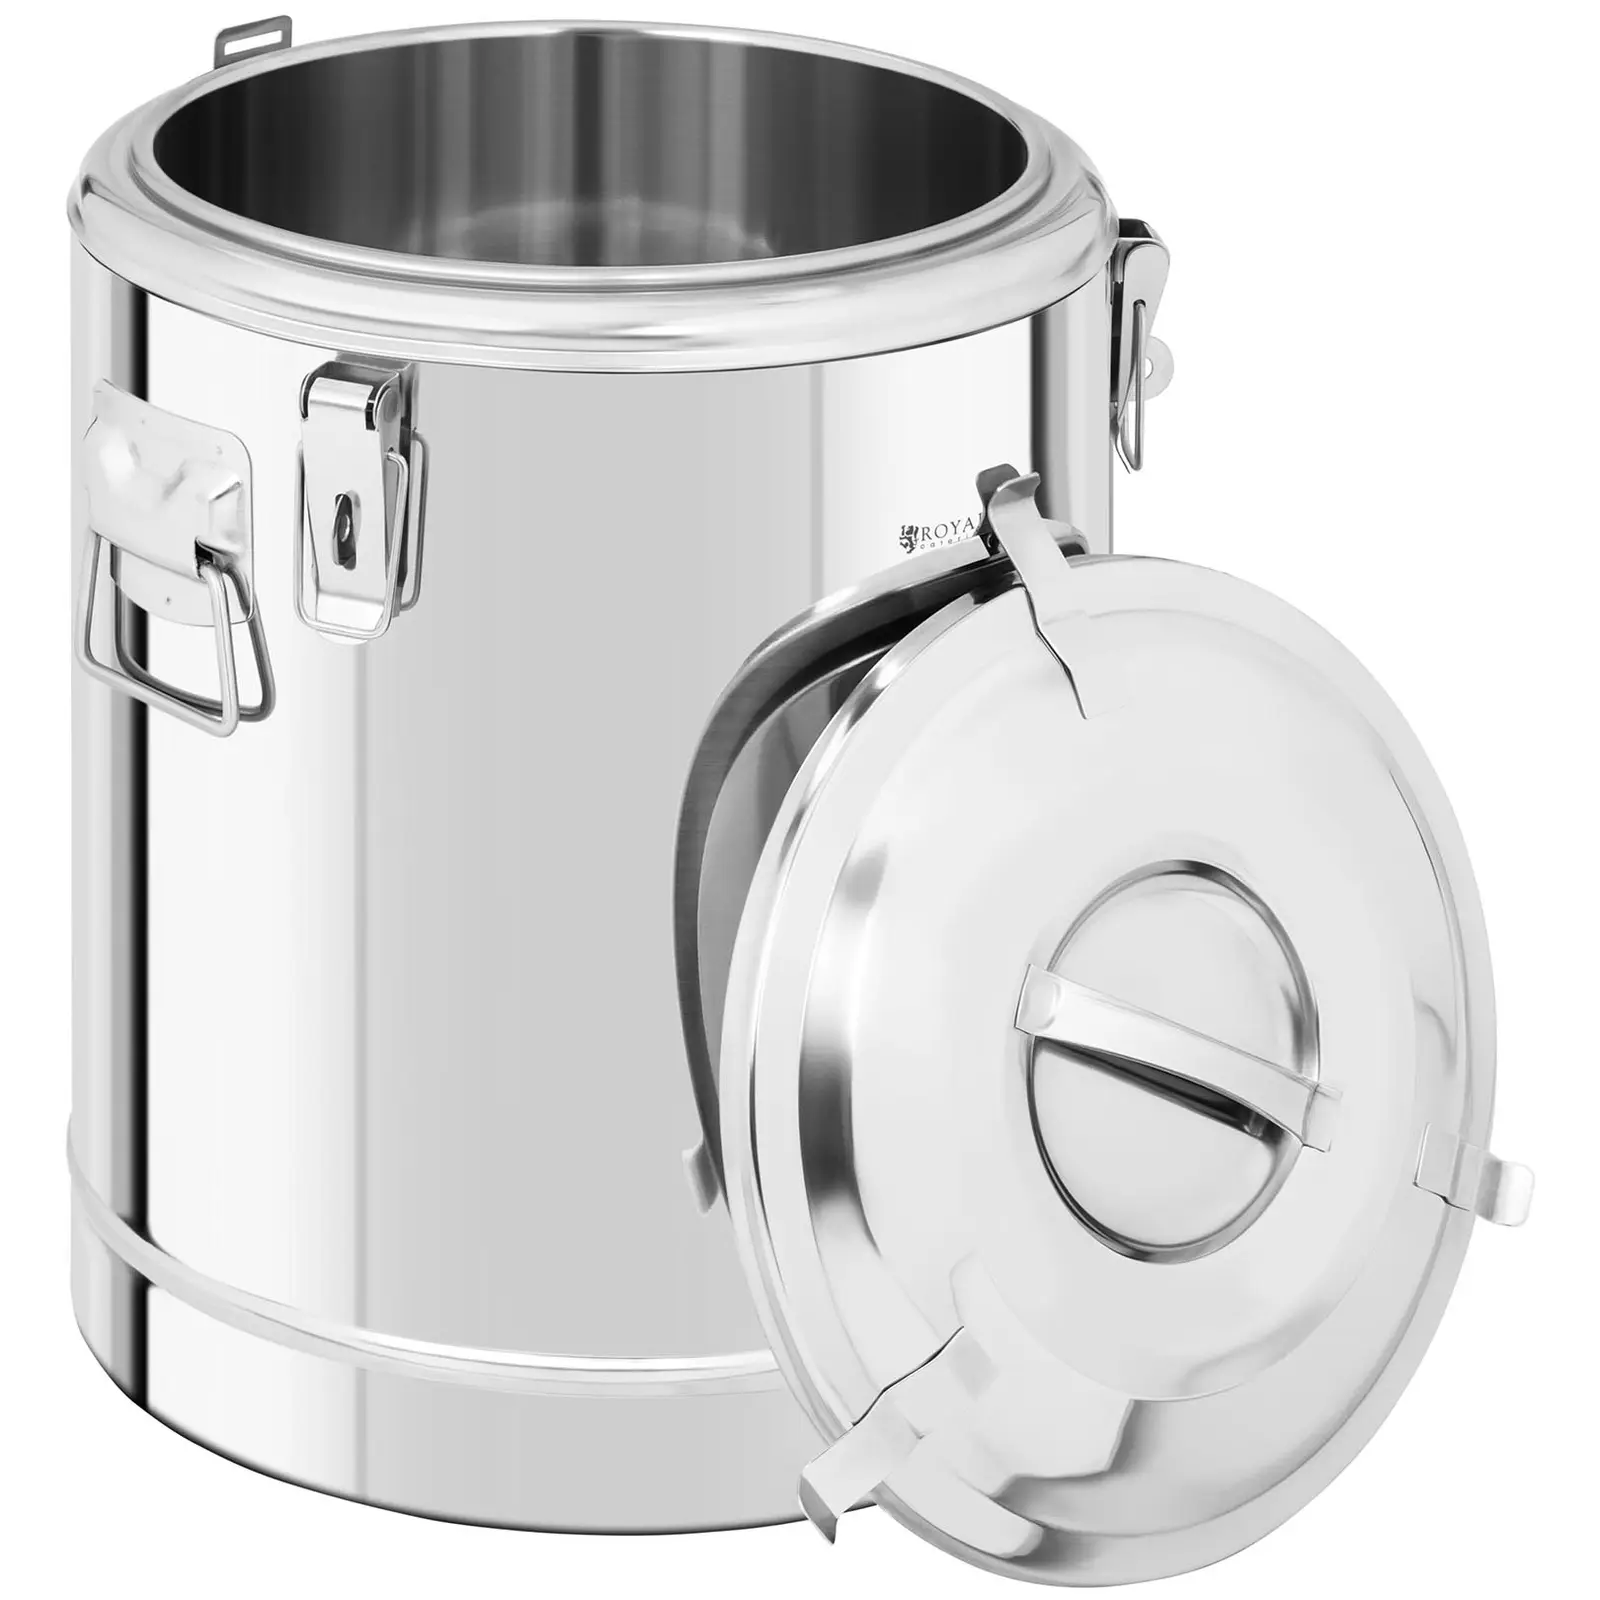 Contenitore termico in acciaio inox - 22,5 L - con rubinetto di scarico